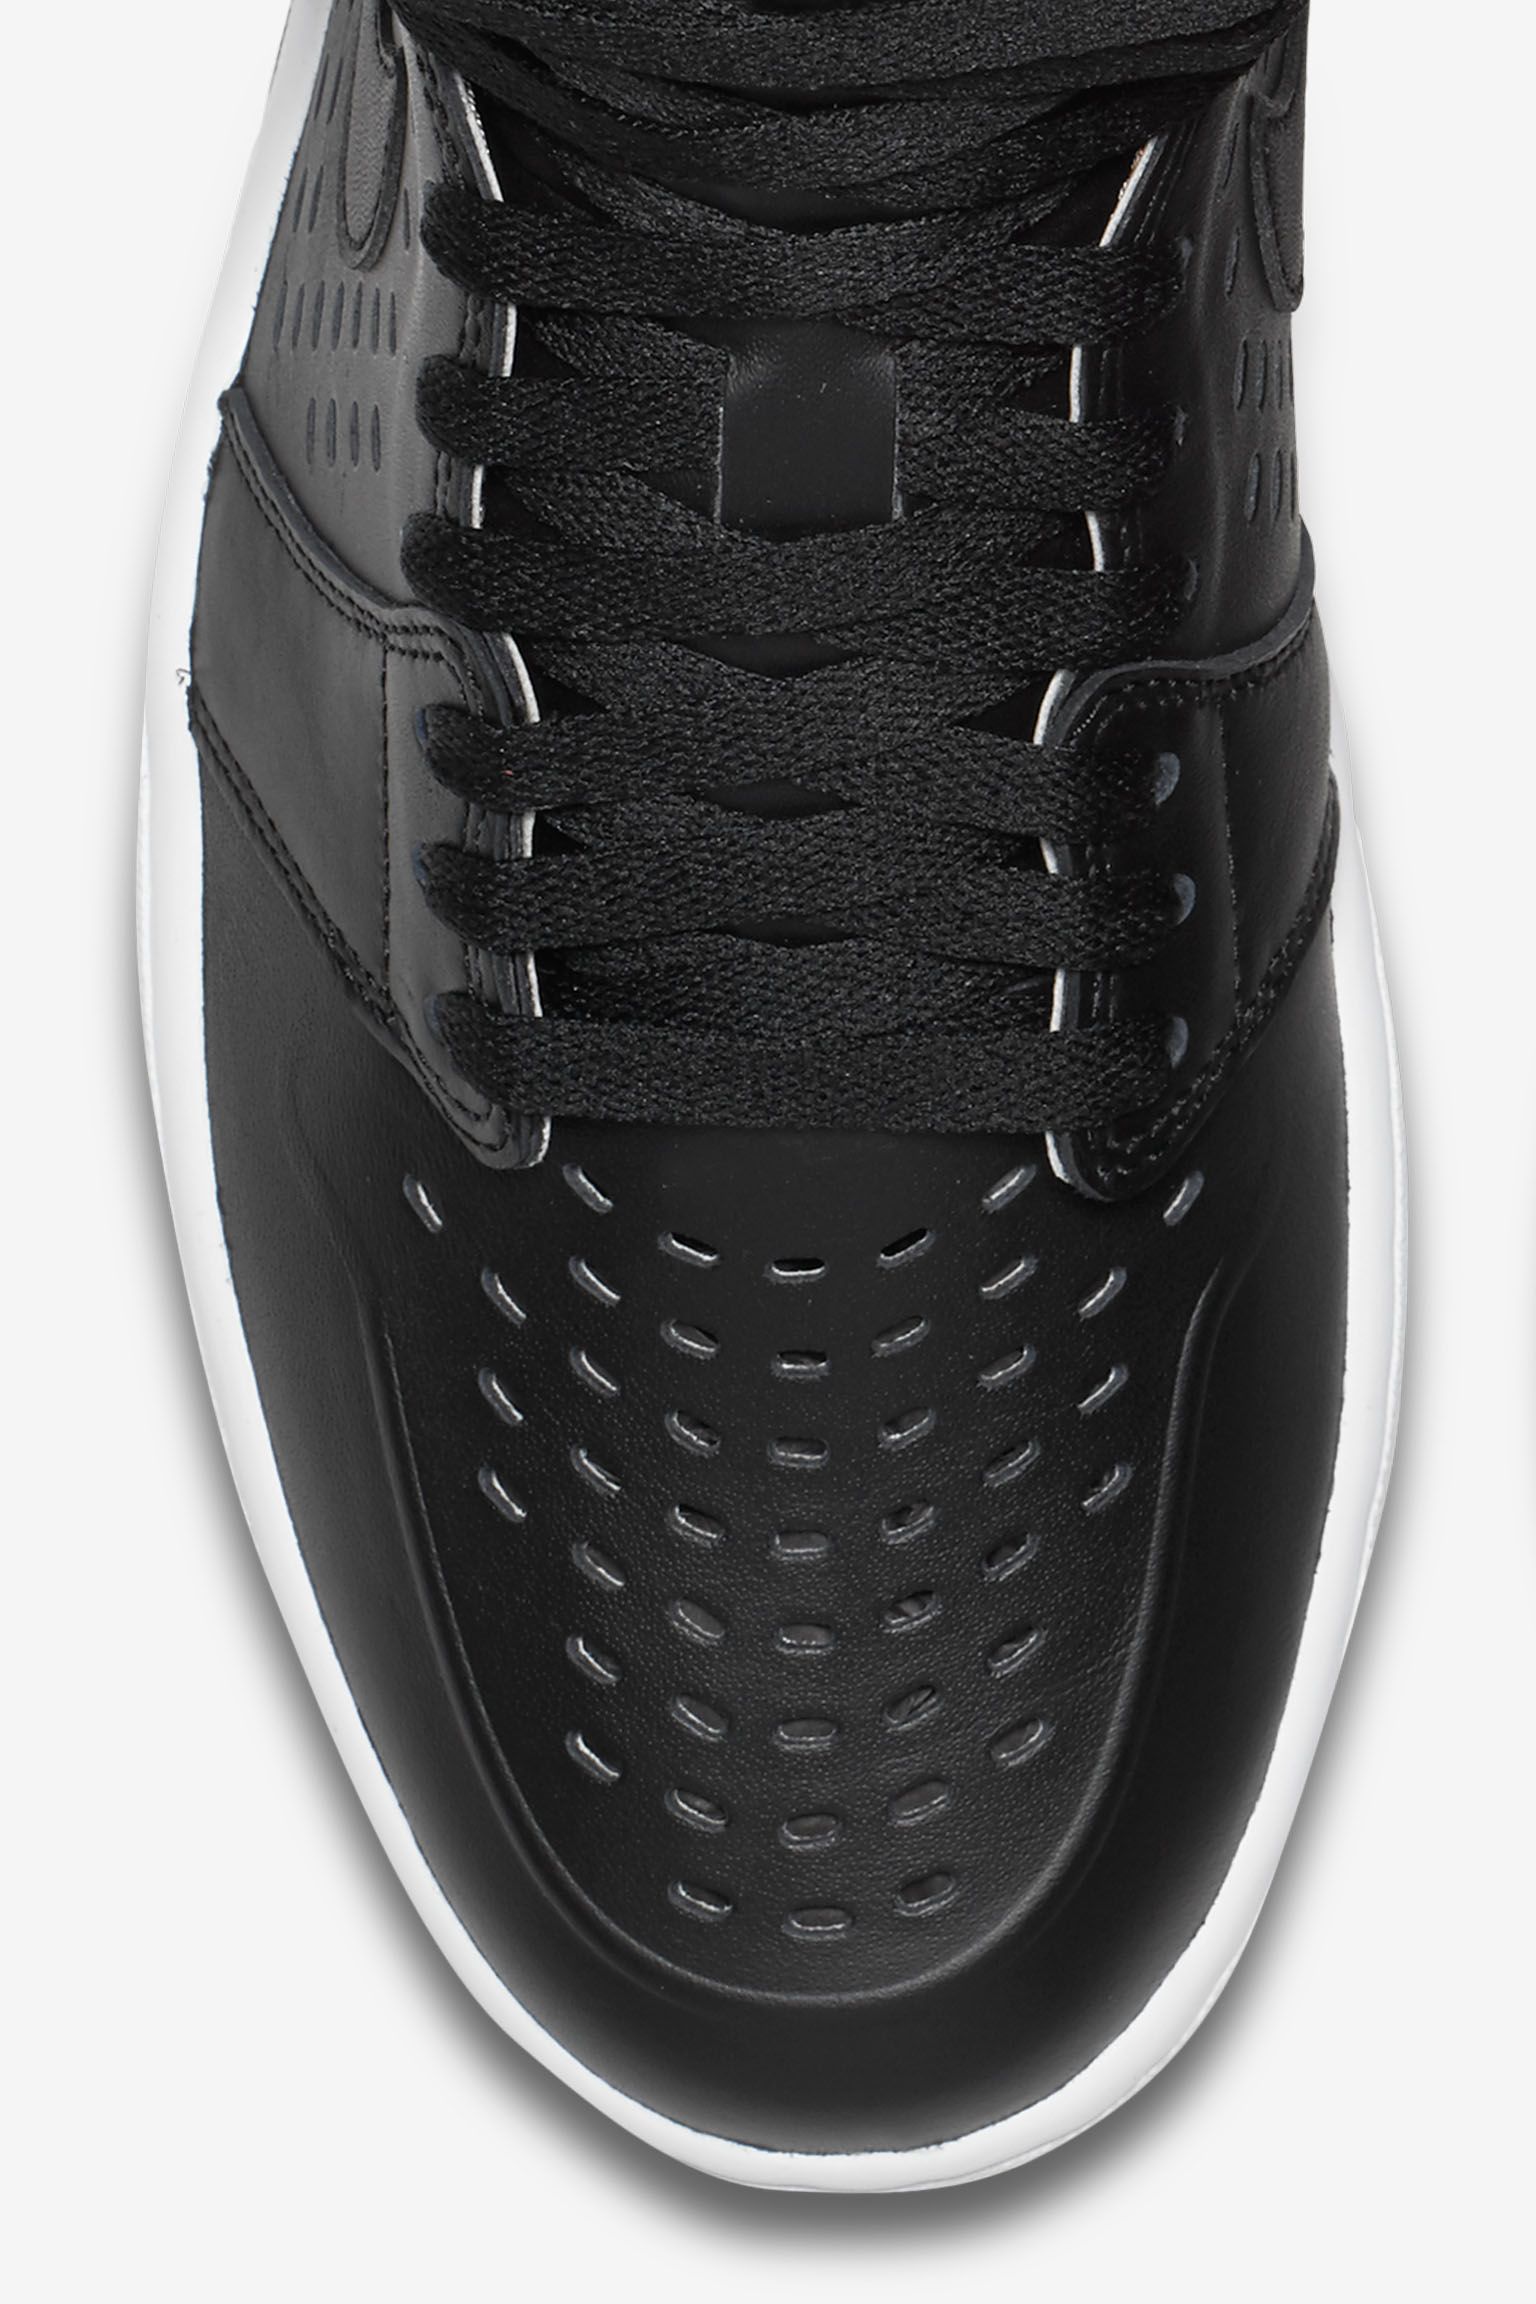 Air Jordan 1 Retro 'Engineered Perf' Black Release Date. Nike⁠+ SNKRS